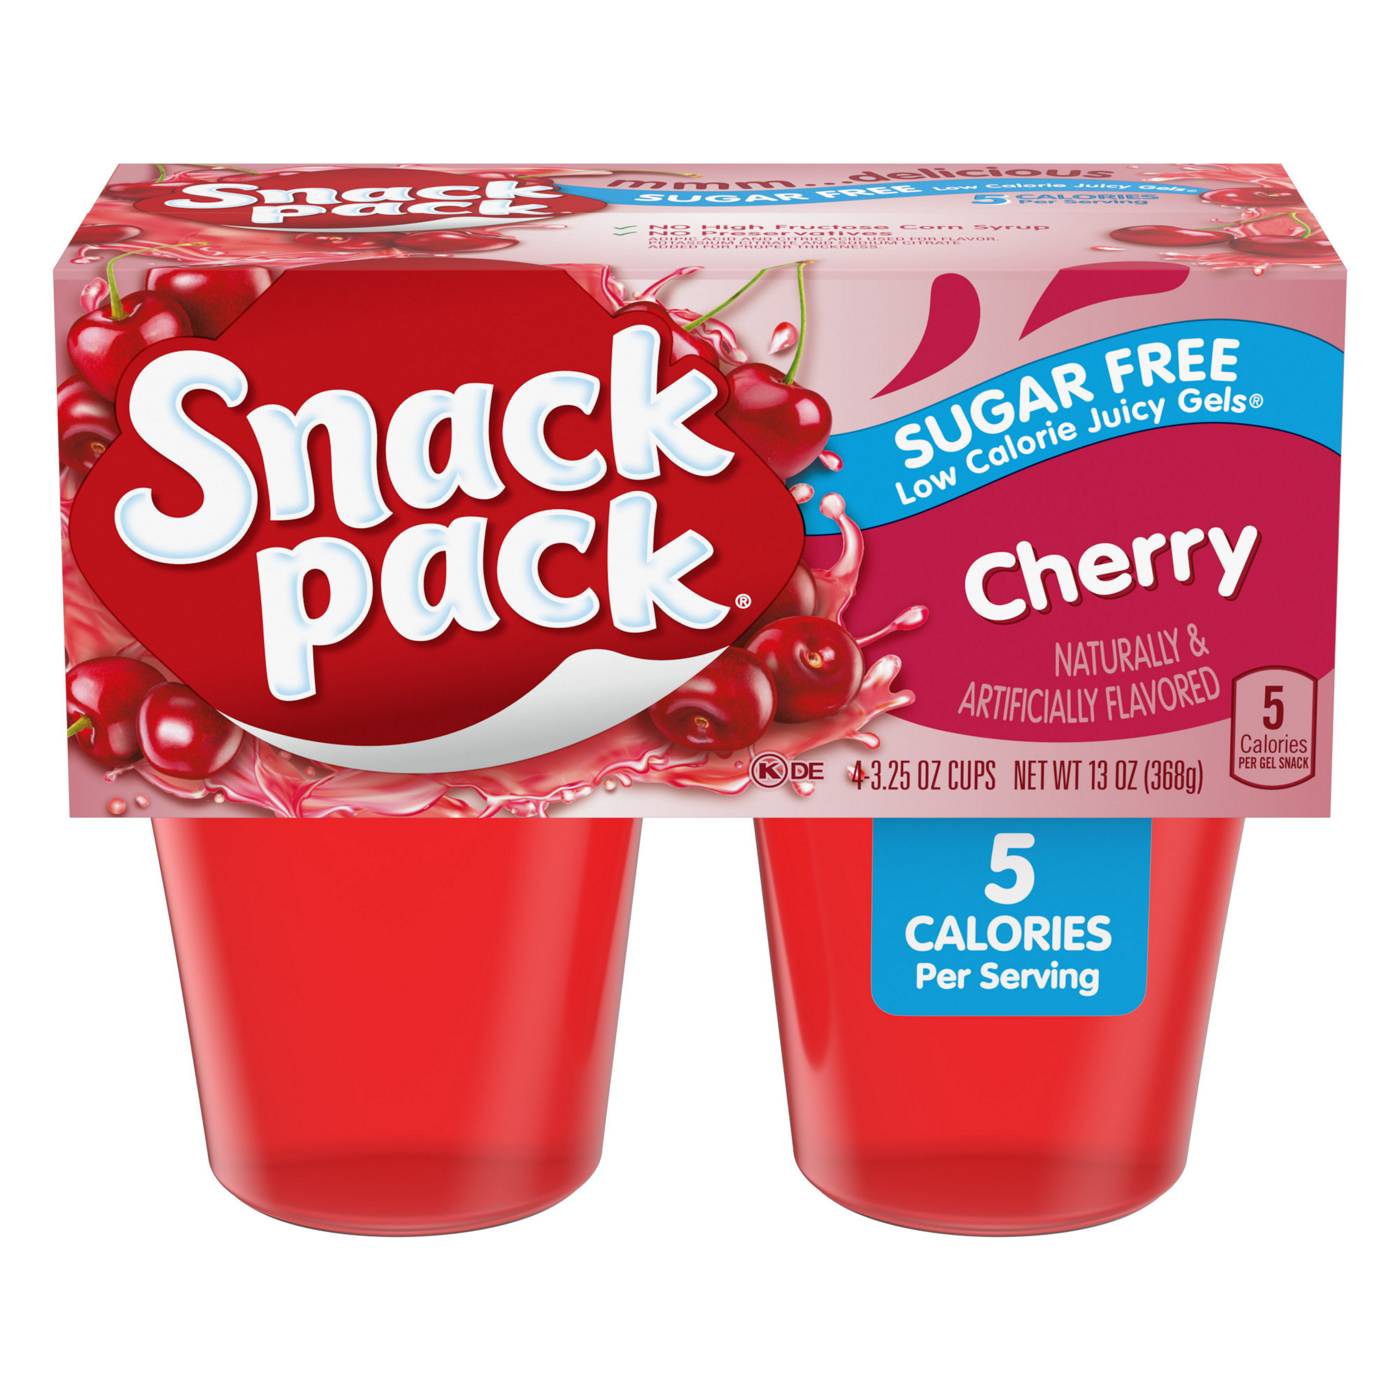 Snack Pack Sugar Free Cherry Juicy Gels Cups; image 1 of 7